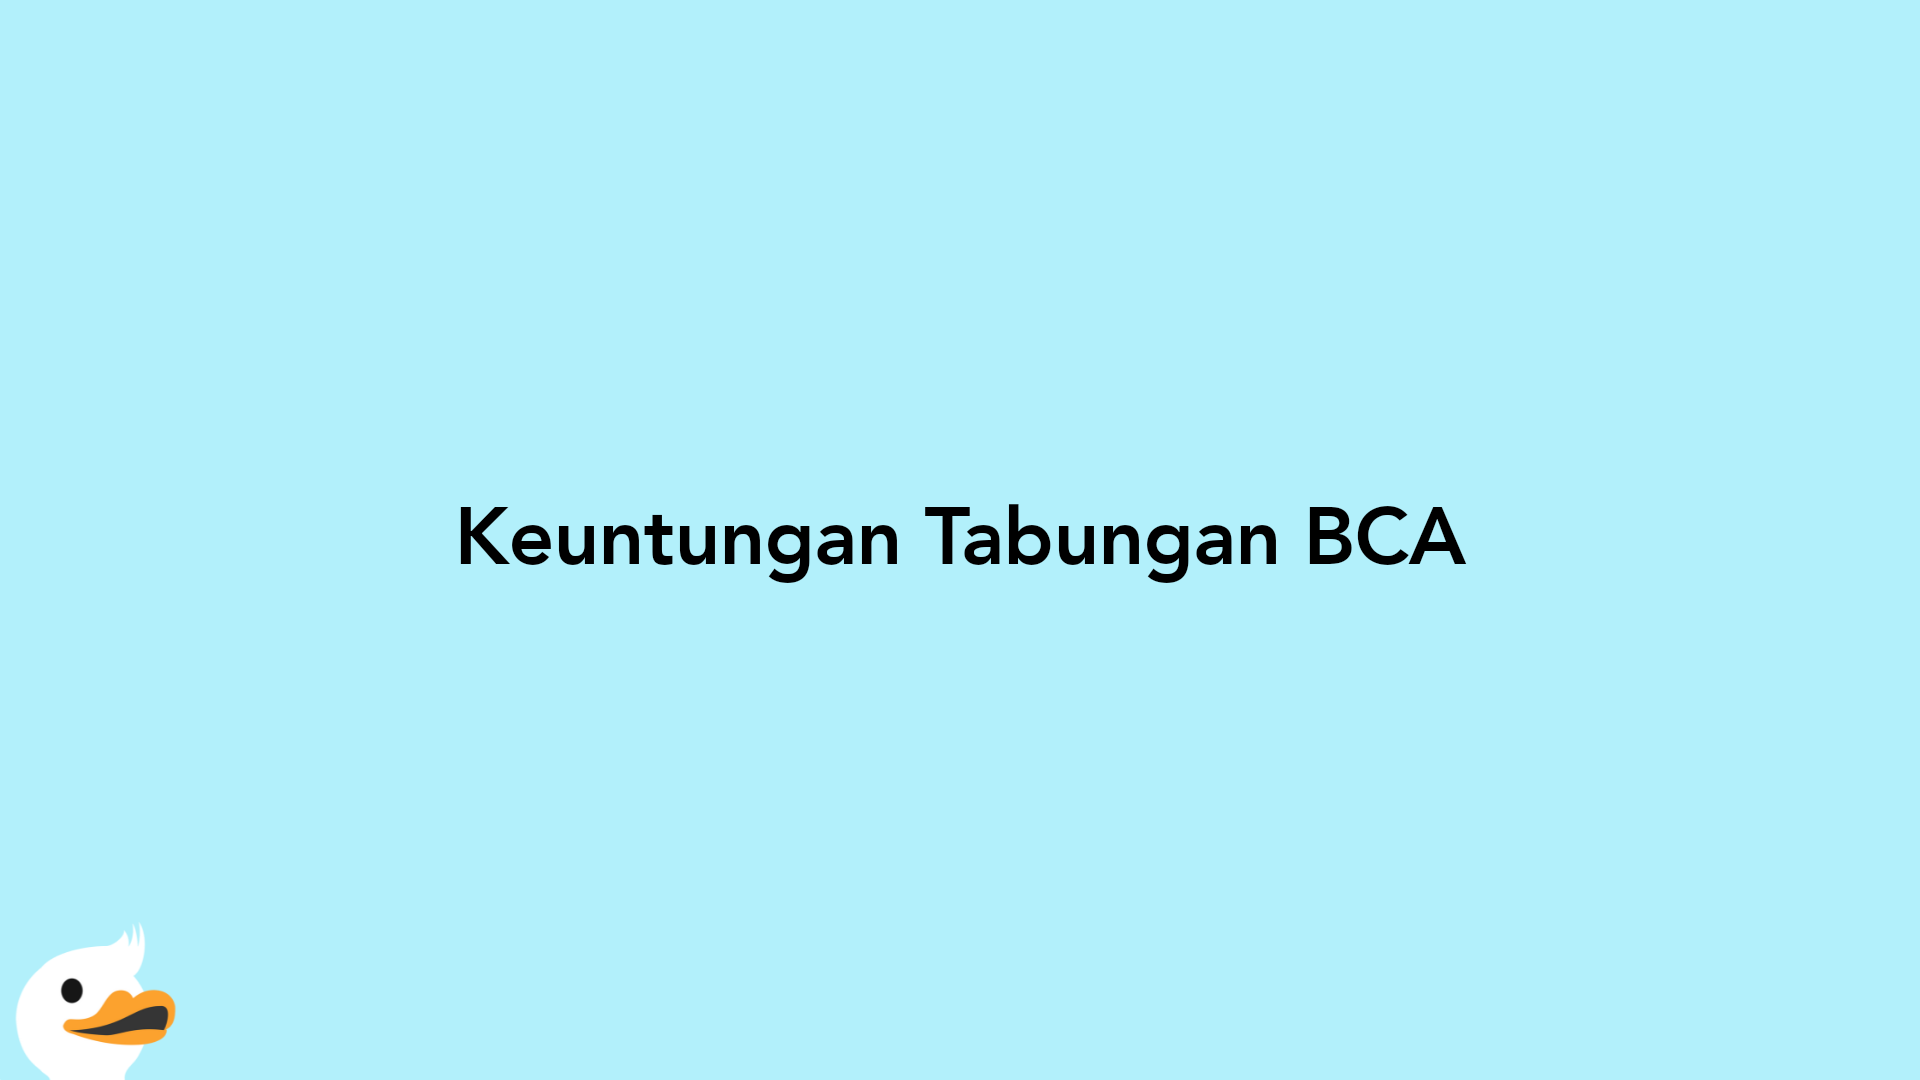 Keuntungan Tabungan BCA